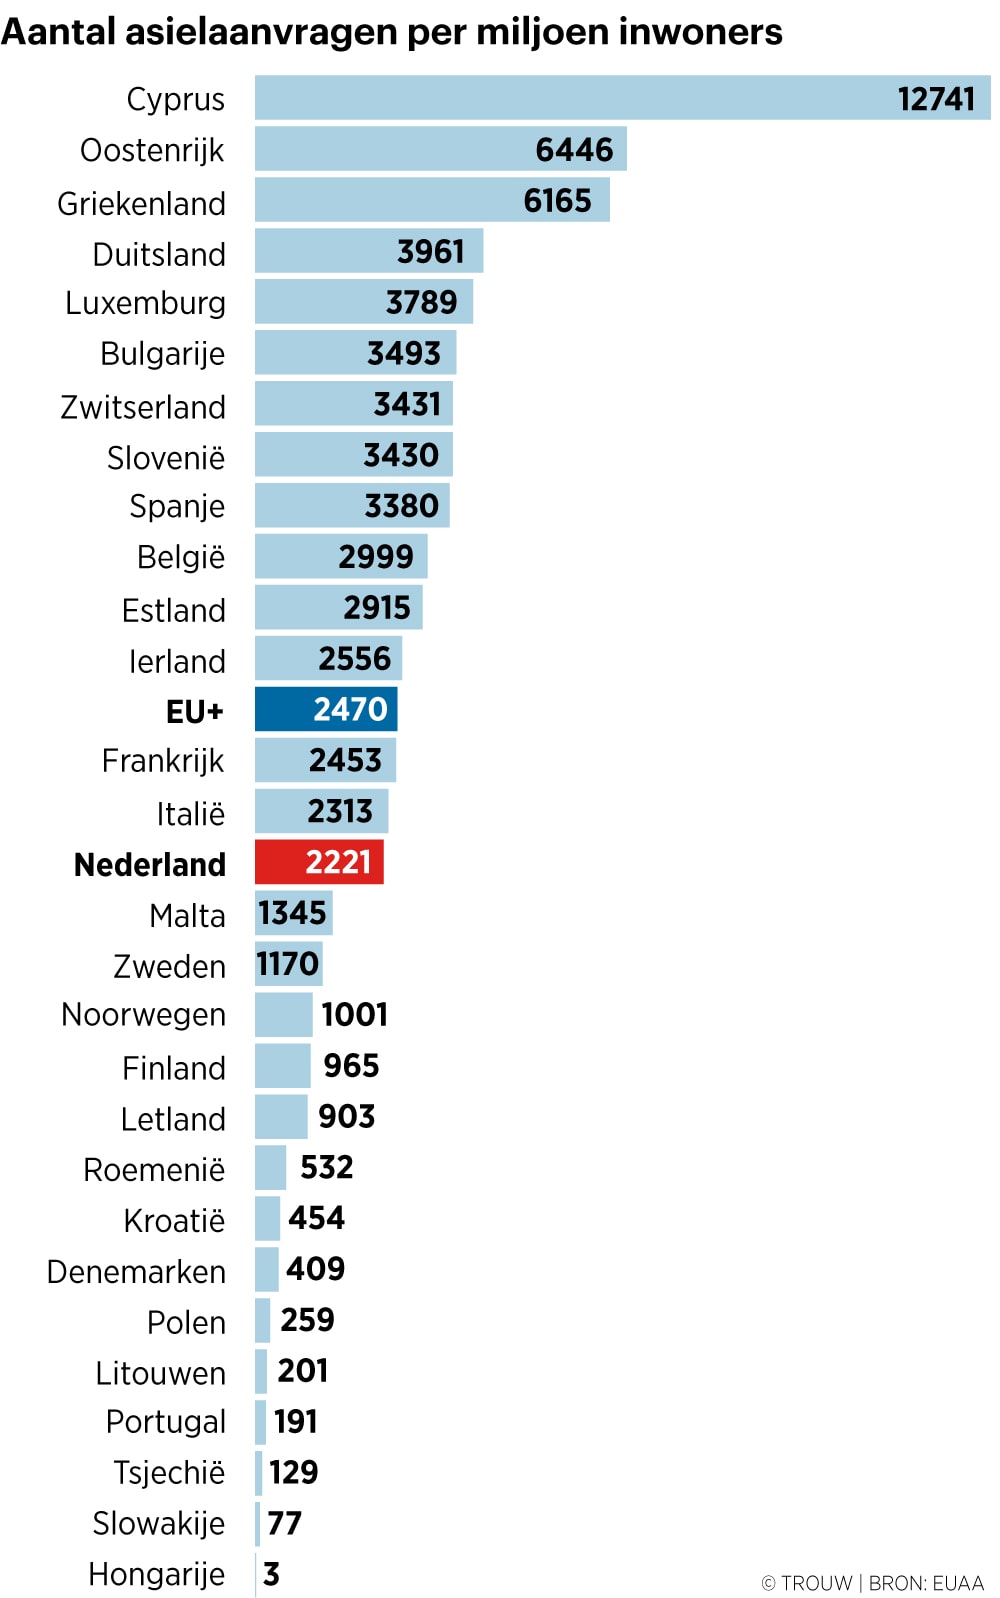 Aantal asielaanvragen in Nederland zakt onder Europees gemiddelde